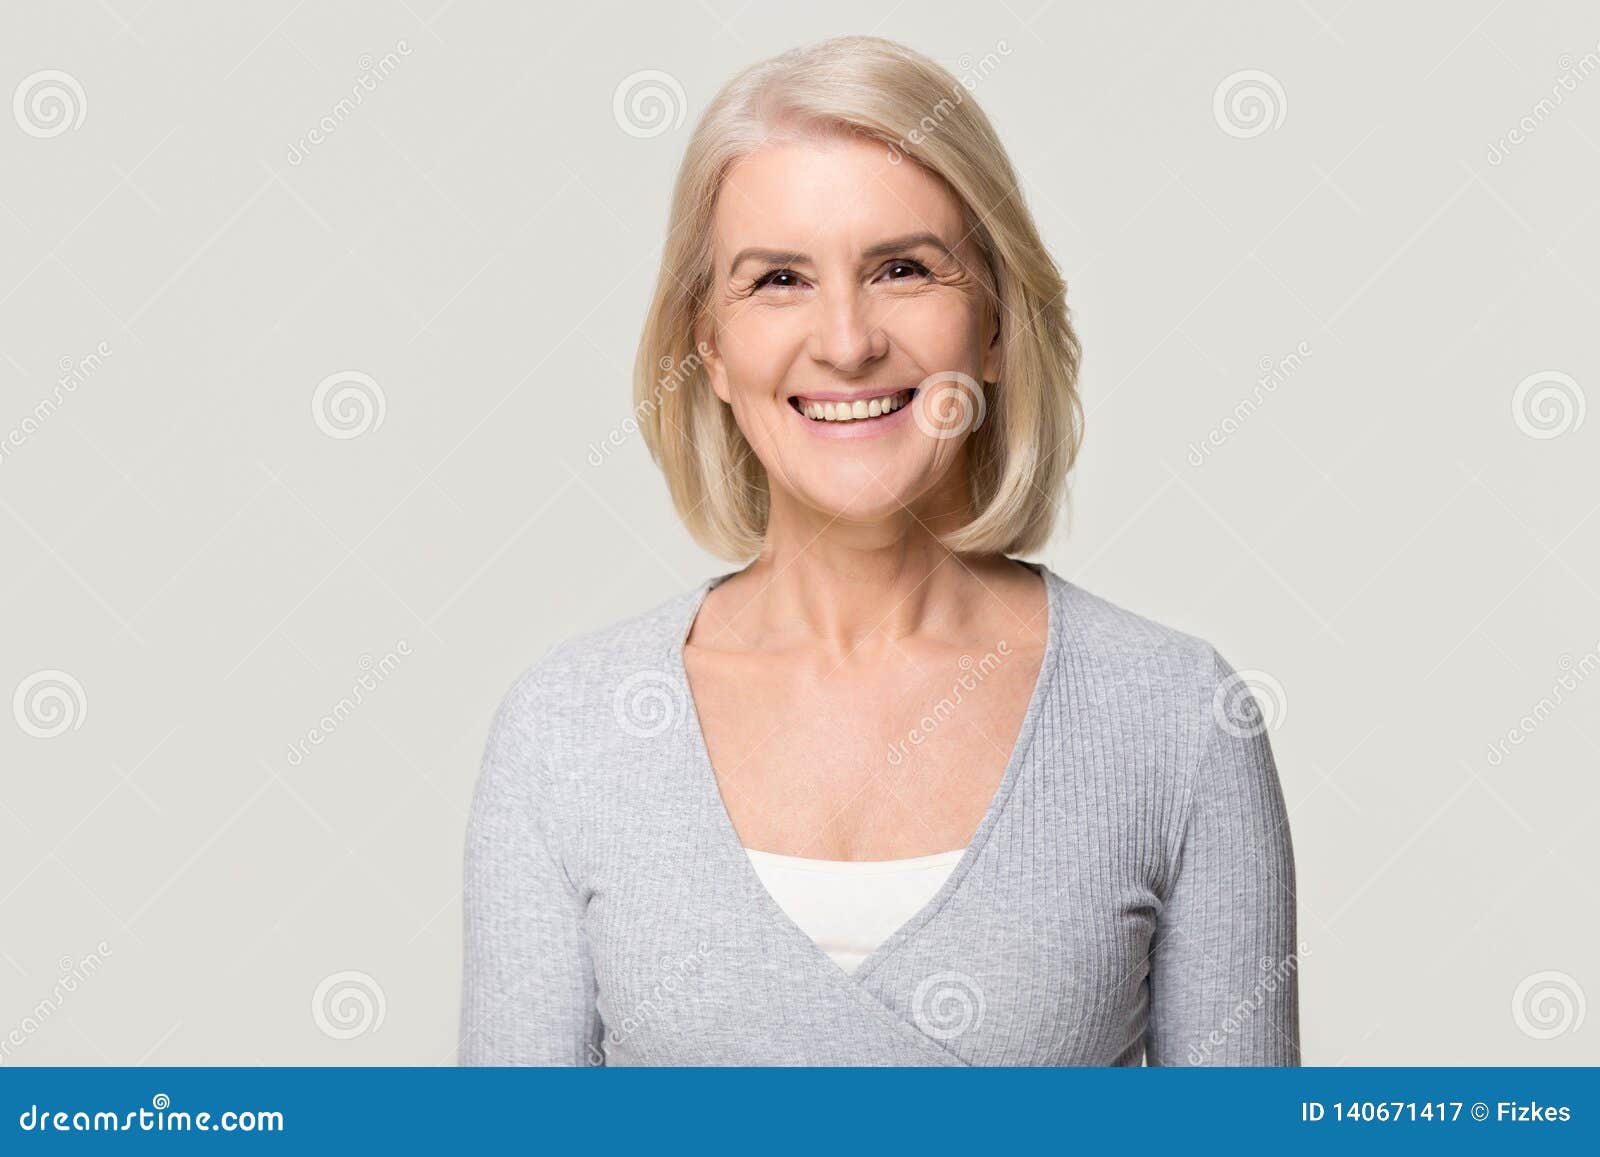 Senior woman isolated. Lady smiling on white background 